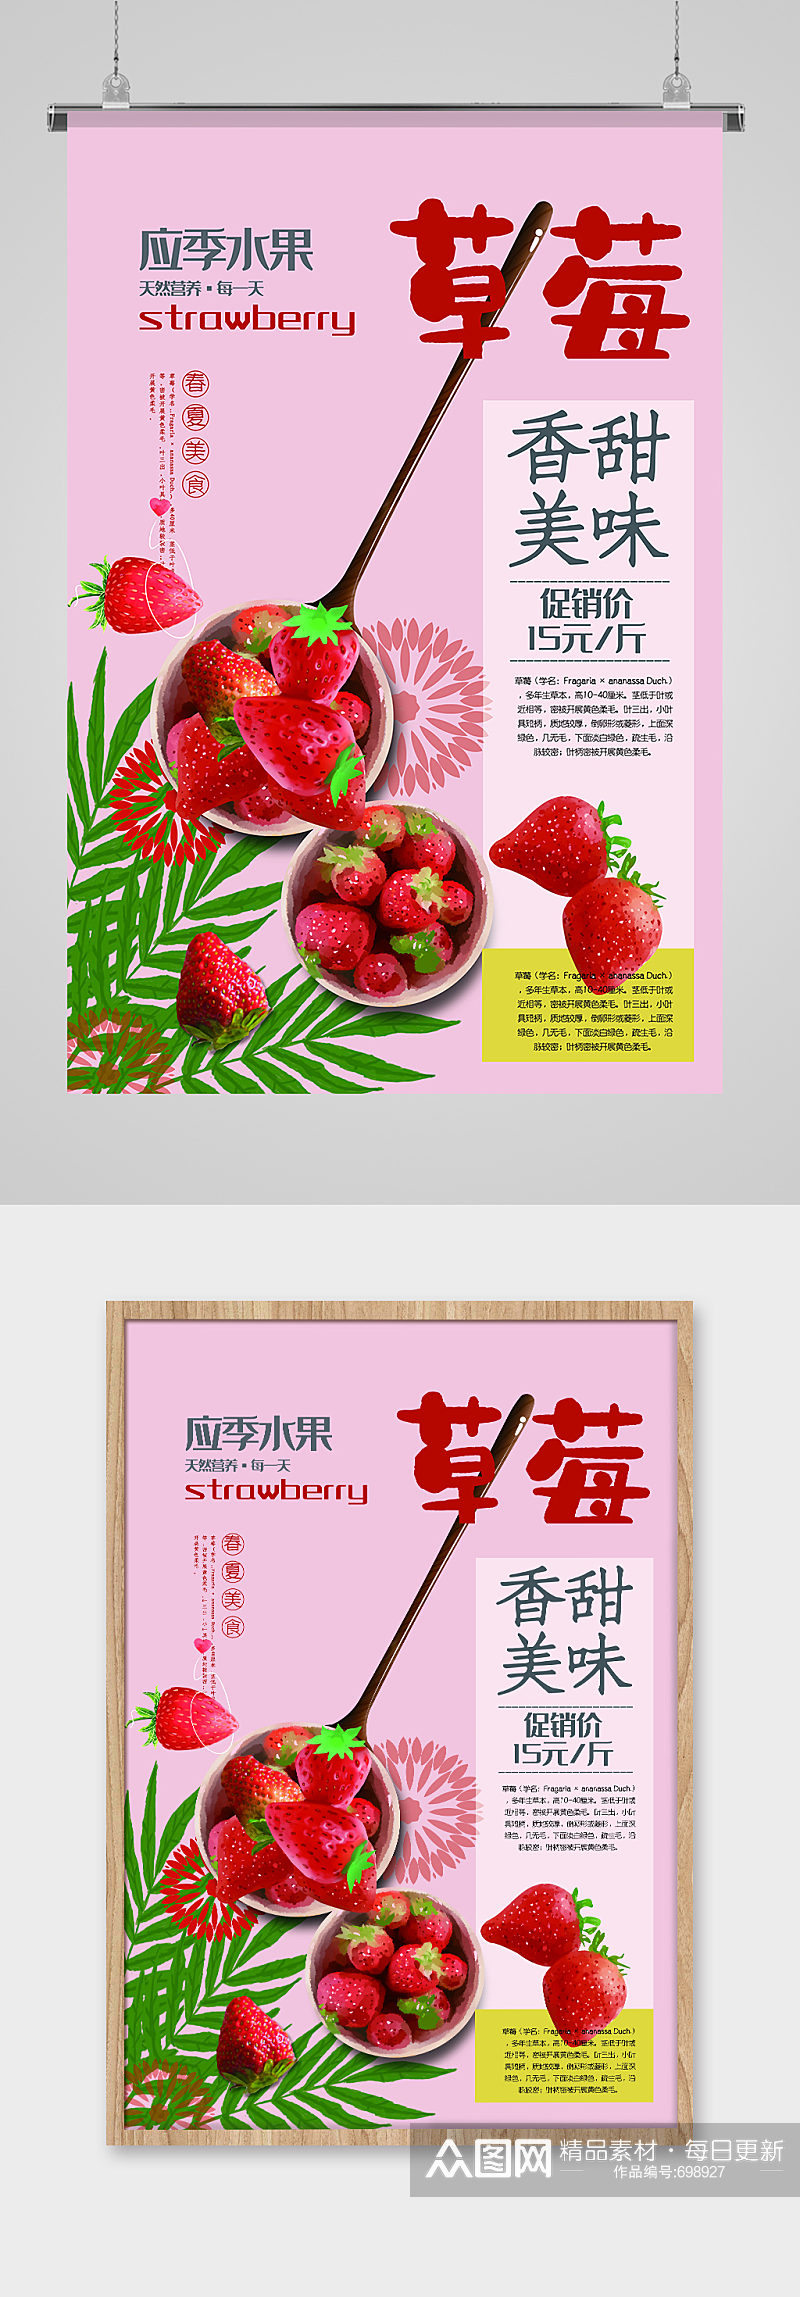 香甜美味草莓水果海报素材